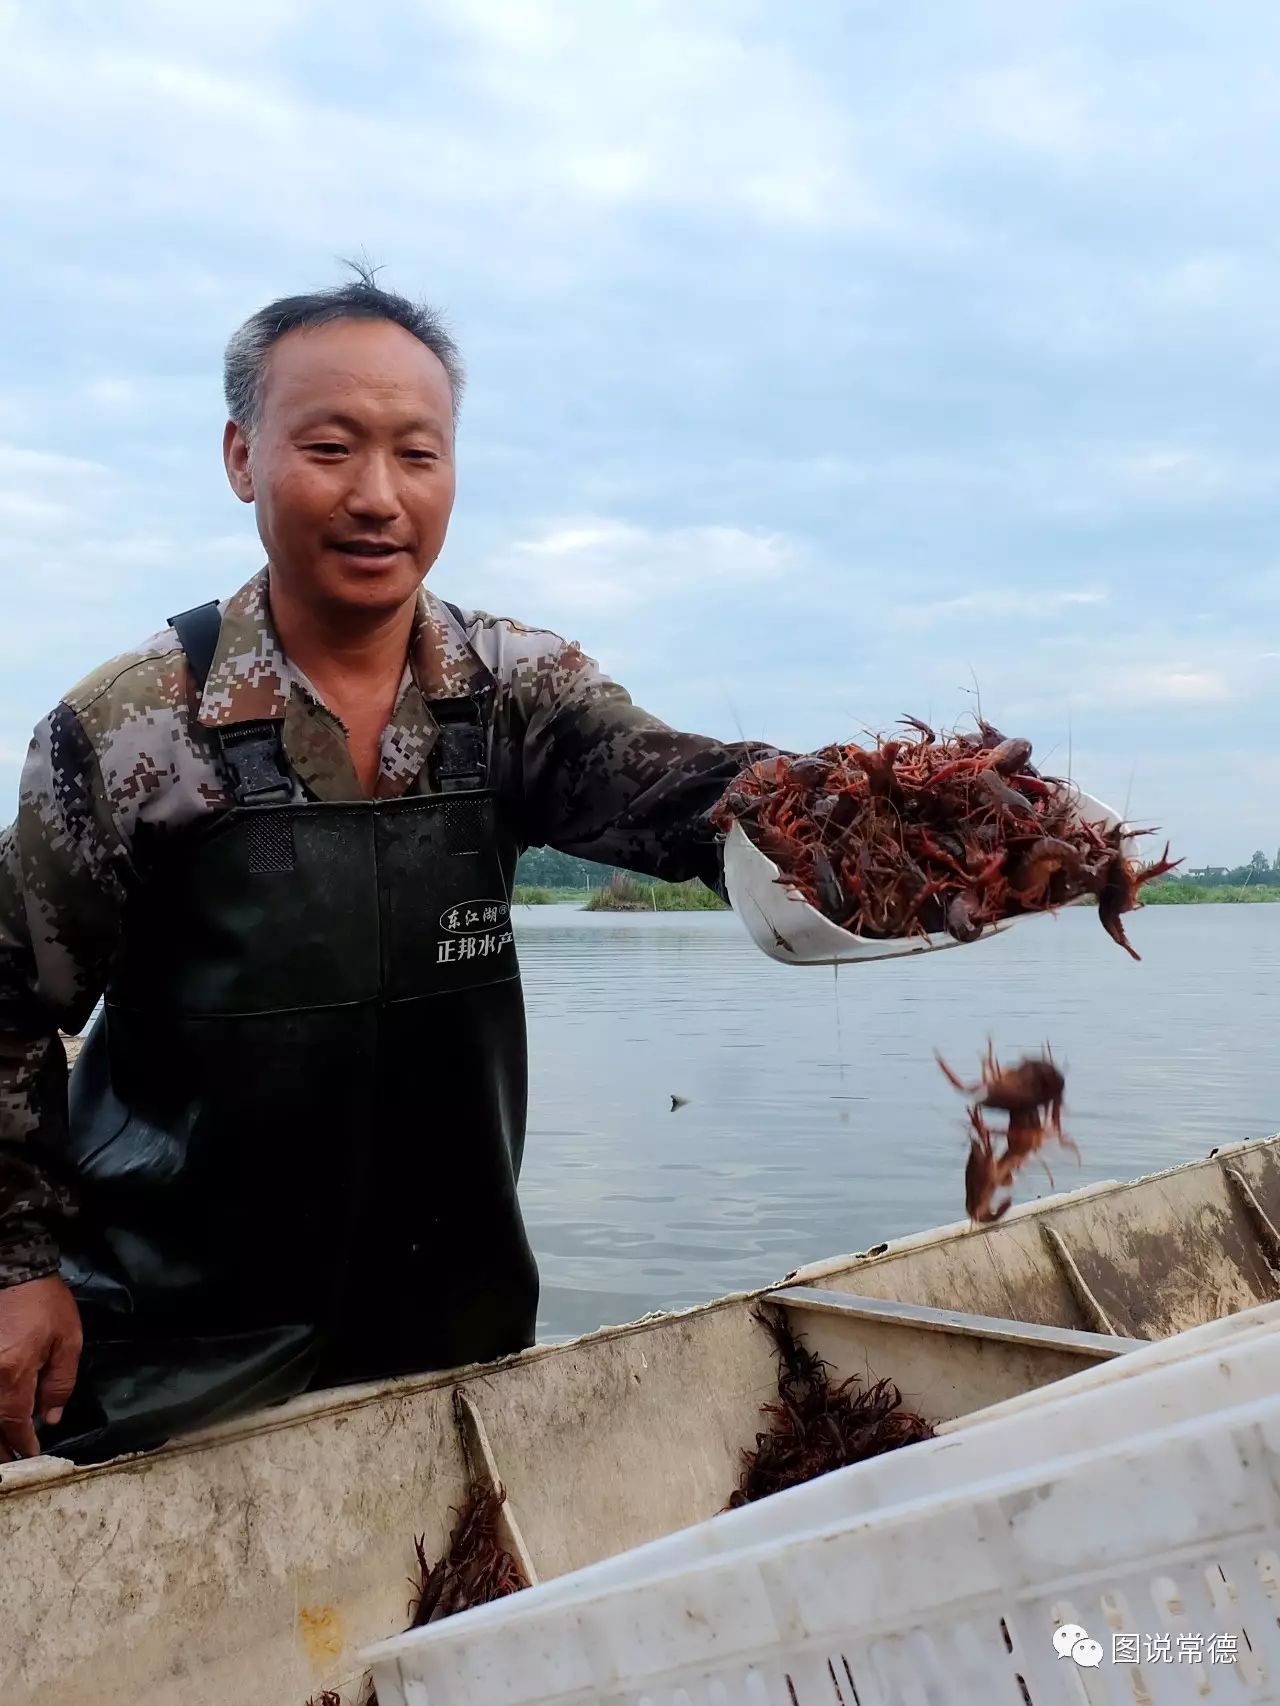 【深度】韩公渡上捕虾人——爱吃龙虾的人看得目瞪口呆